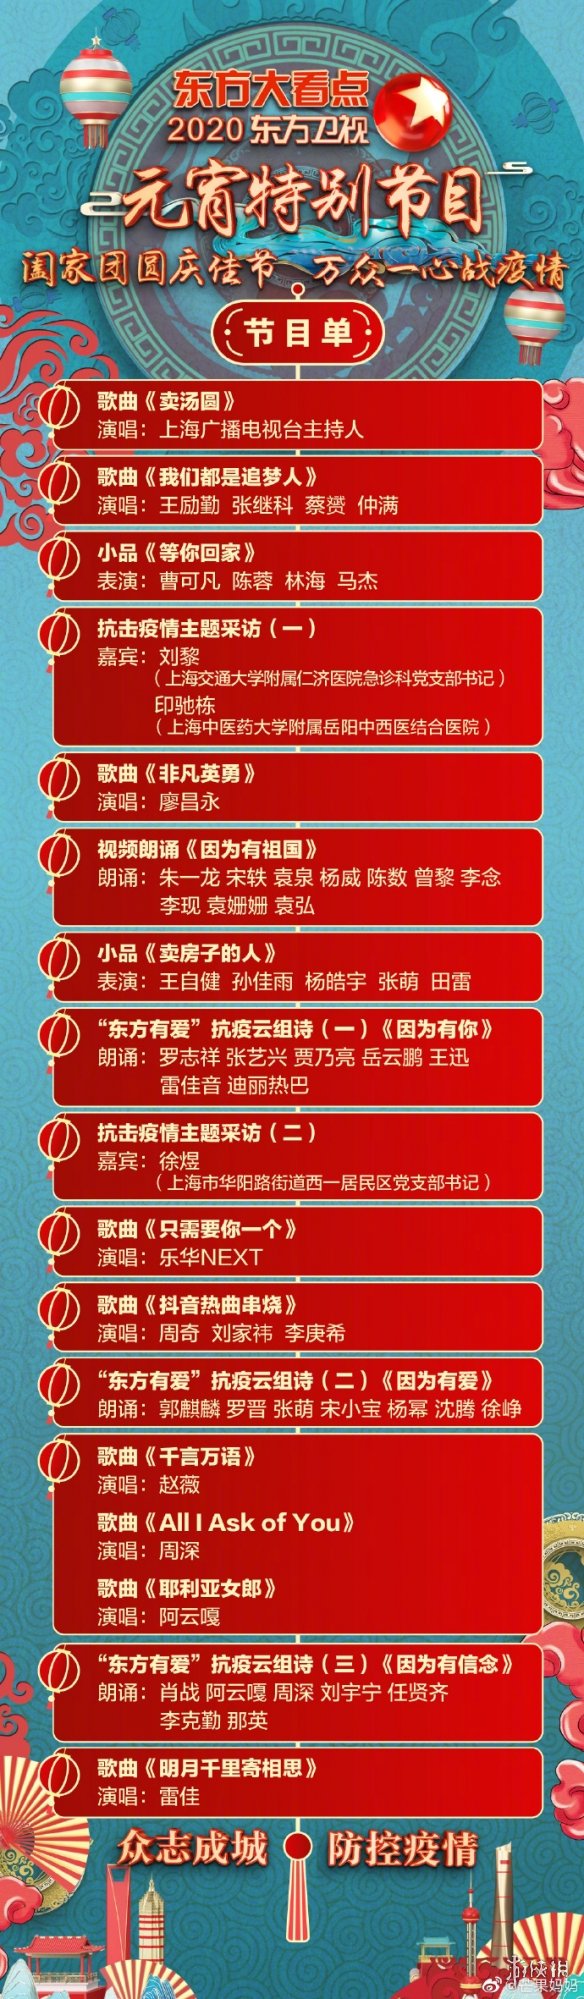 2020央视湖南江苏东方安徽卫视元宵晚会节目单完整版